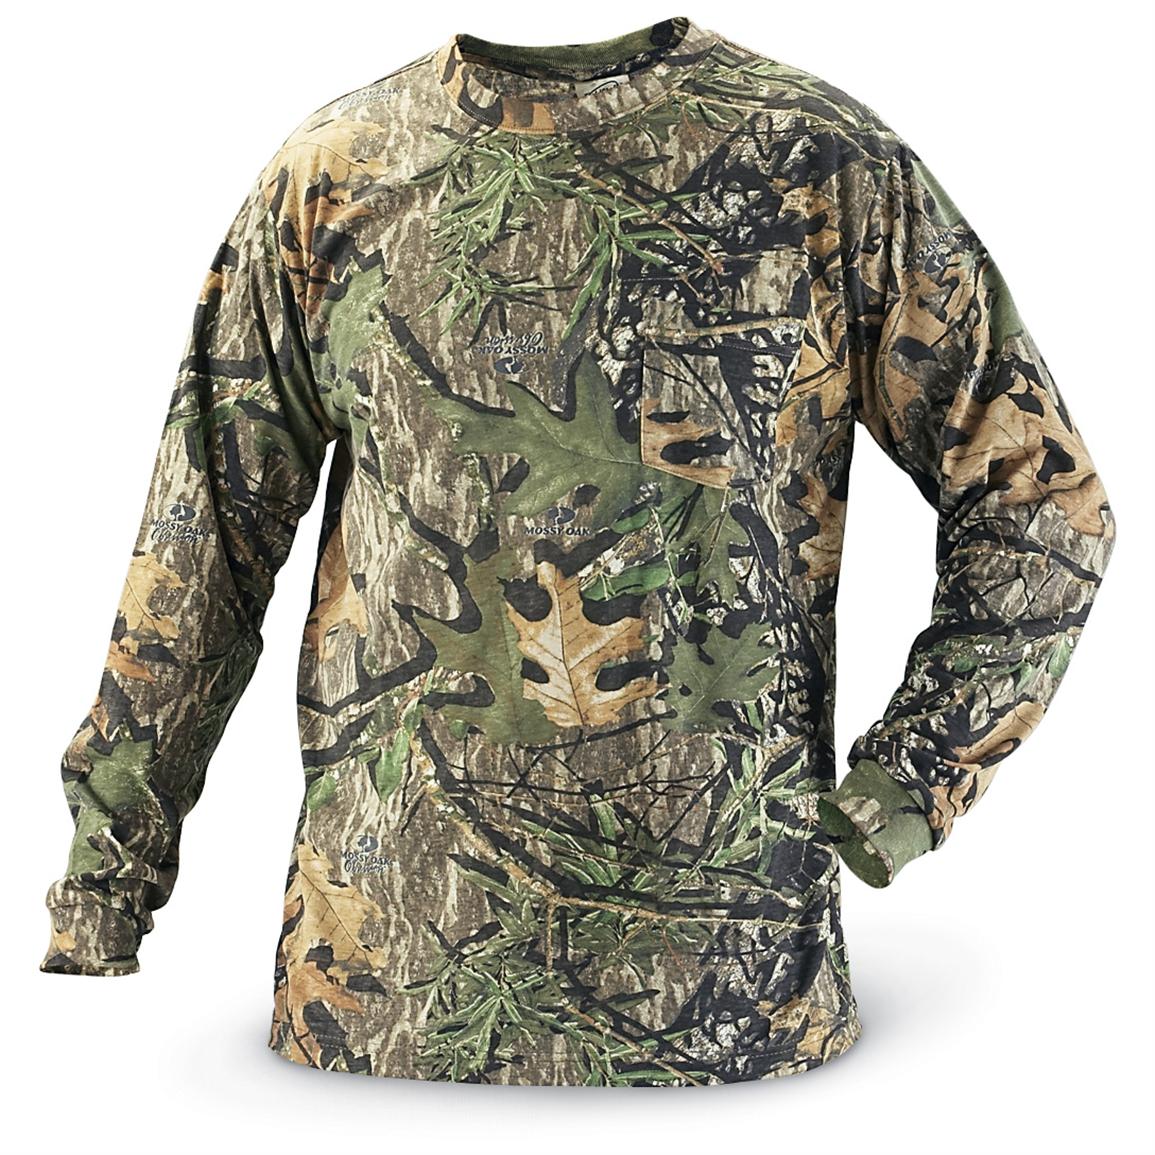 2 Mossy Oak® Apparel Field Staff T - shirts, Mossy Oak® Obsession ...